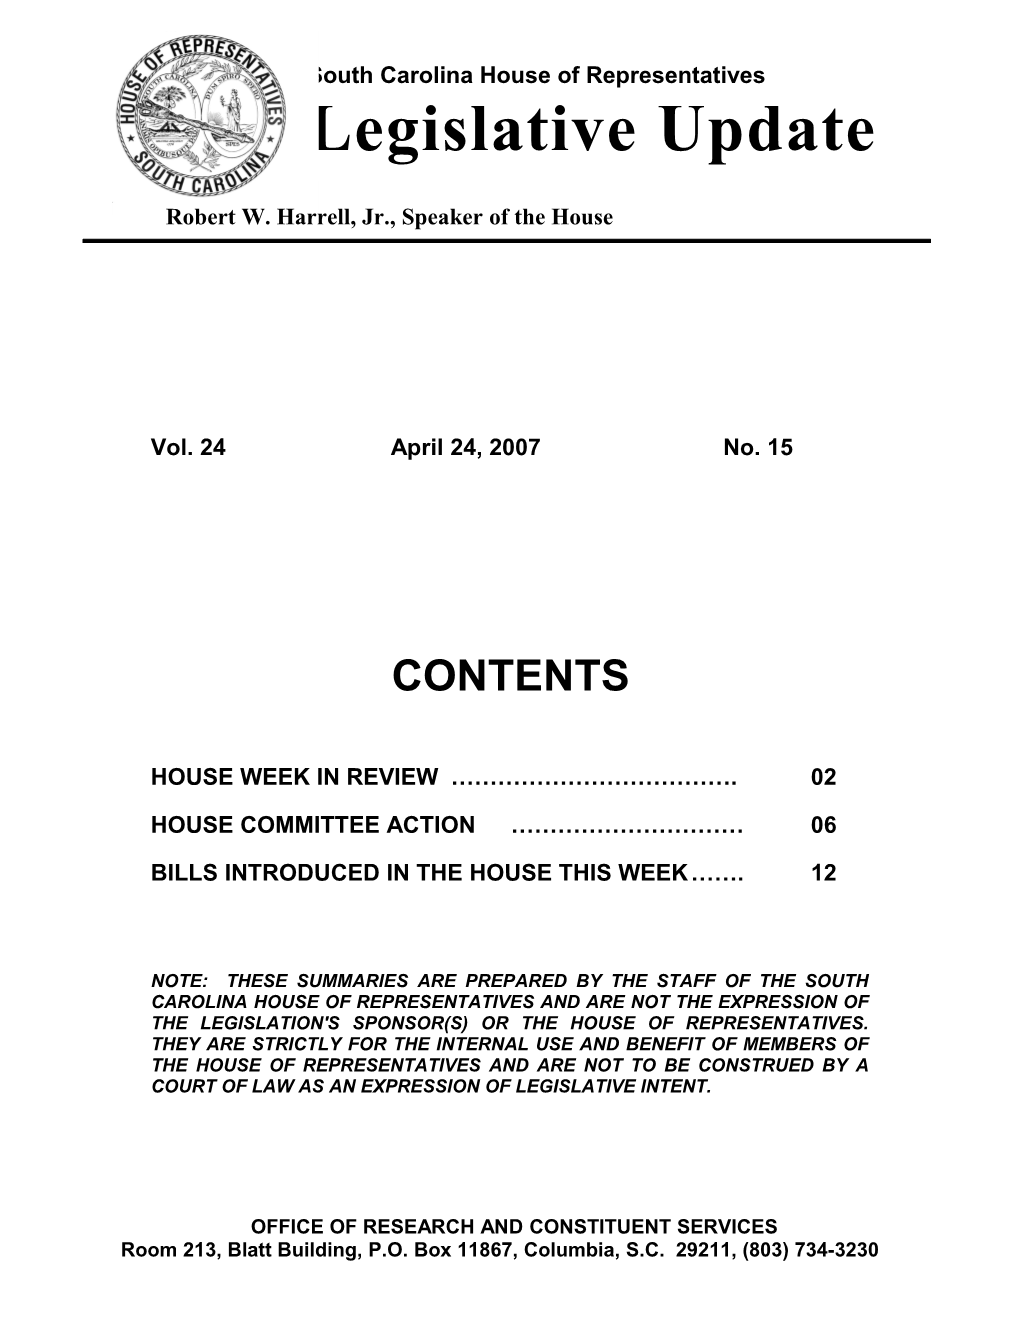 Legislative Update - Vol. 24 No. 15 April 24, 2007 - South Carolina Legislature Online